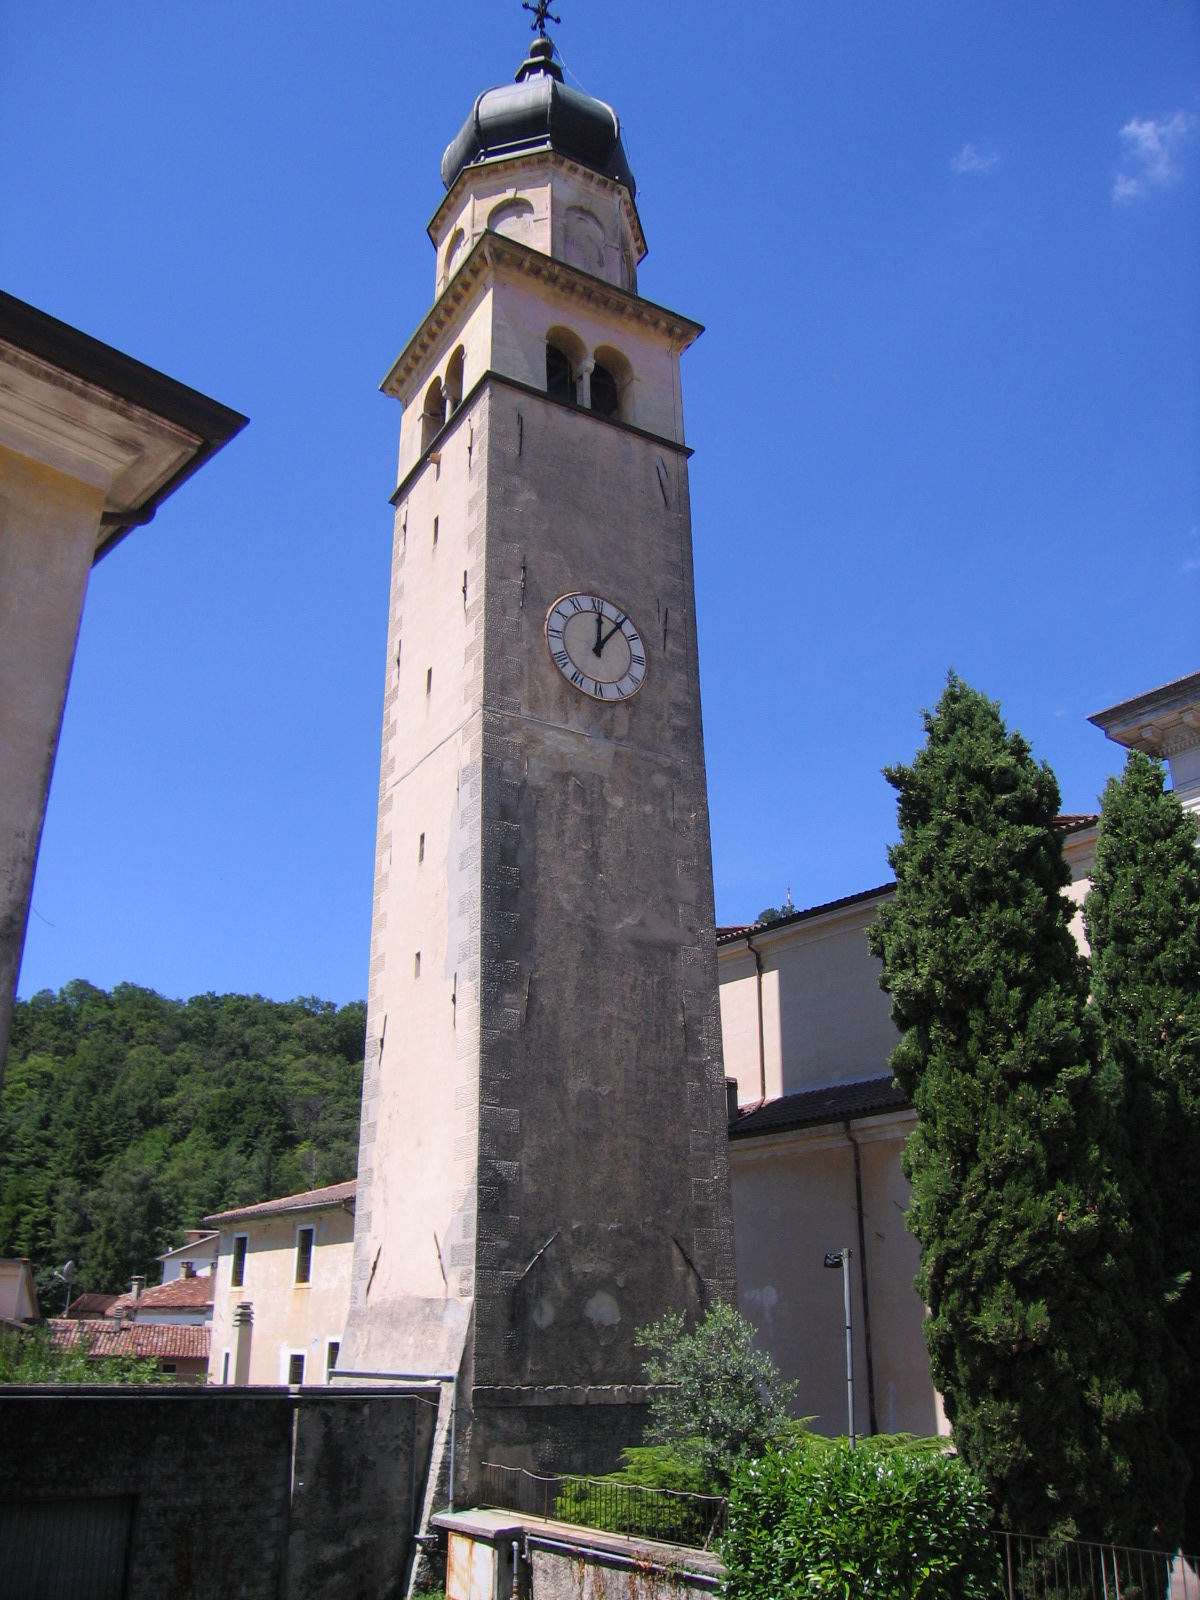 Campanile - Chiesa Arcipretale della Purificazione della Beata Vergine (campanile) - Tarzo (TV)  (XVI)